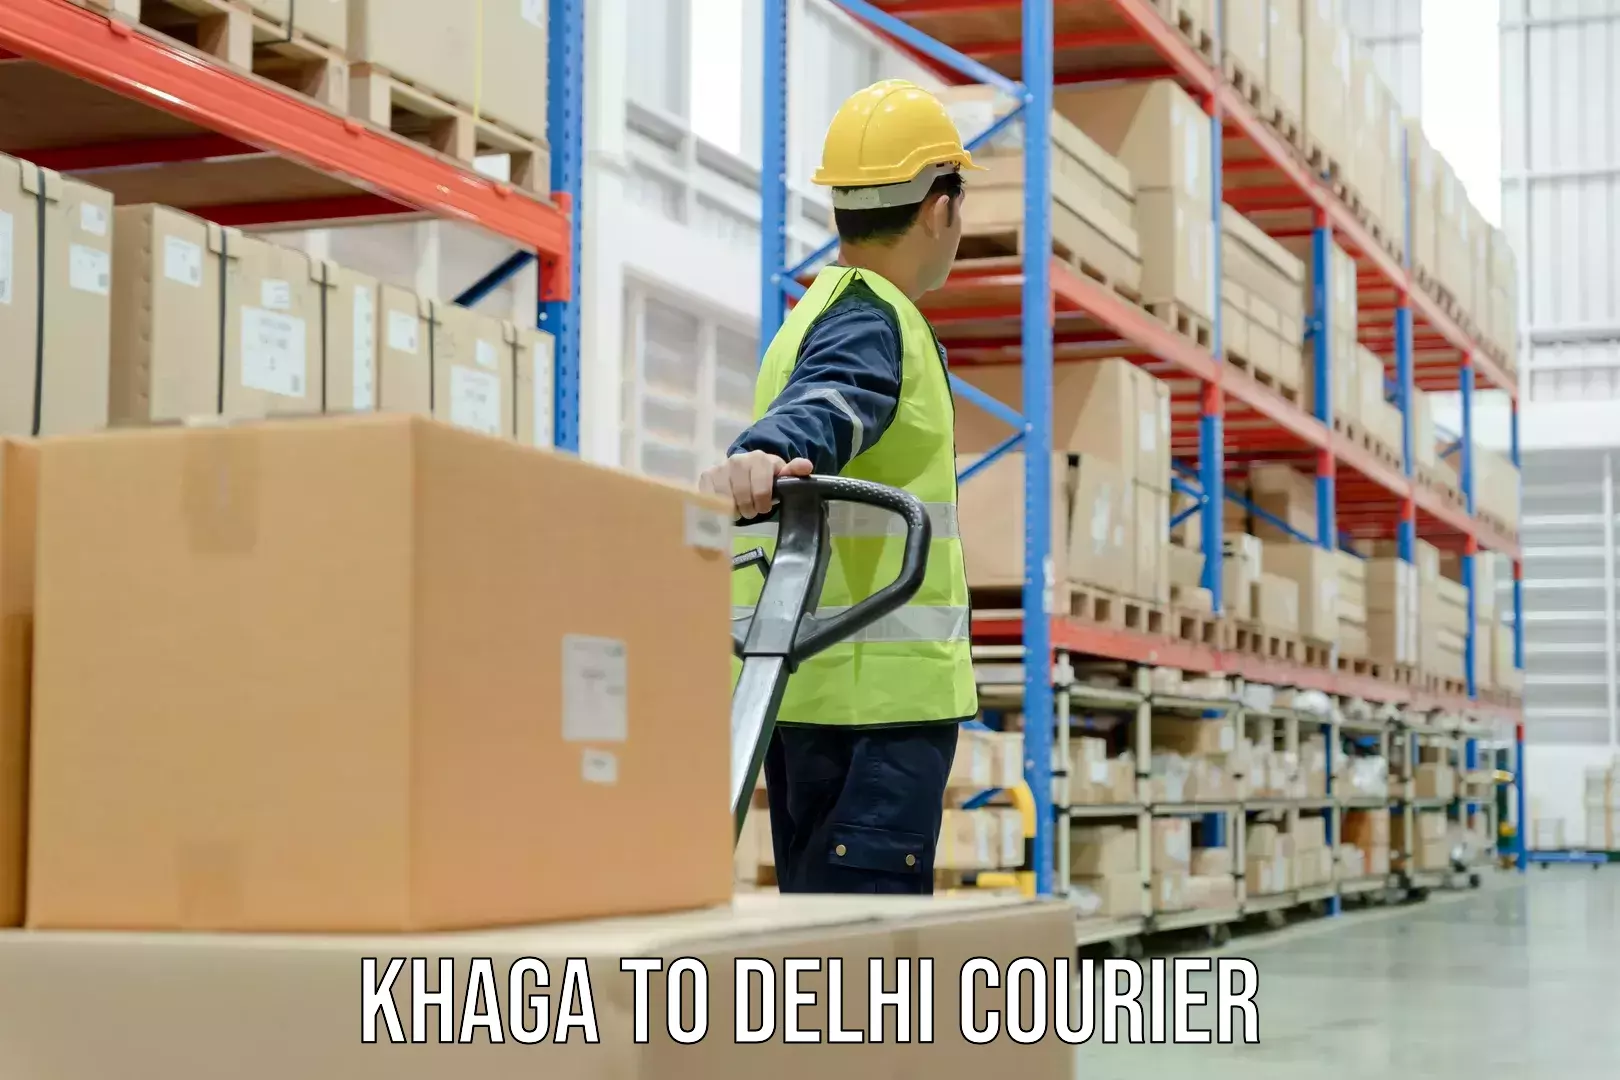 Modern courier technology in Khaga to Jamia Millia Islamia New Delhi